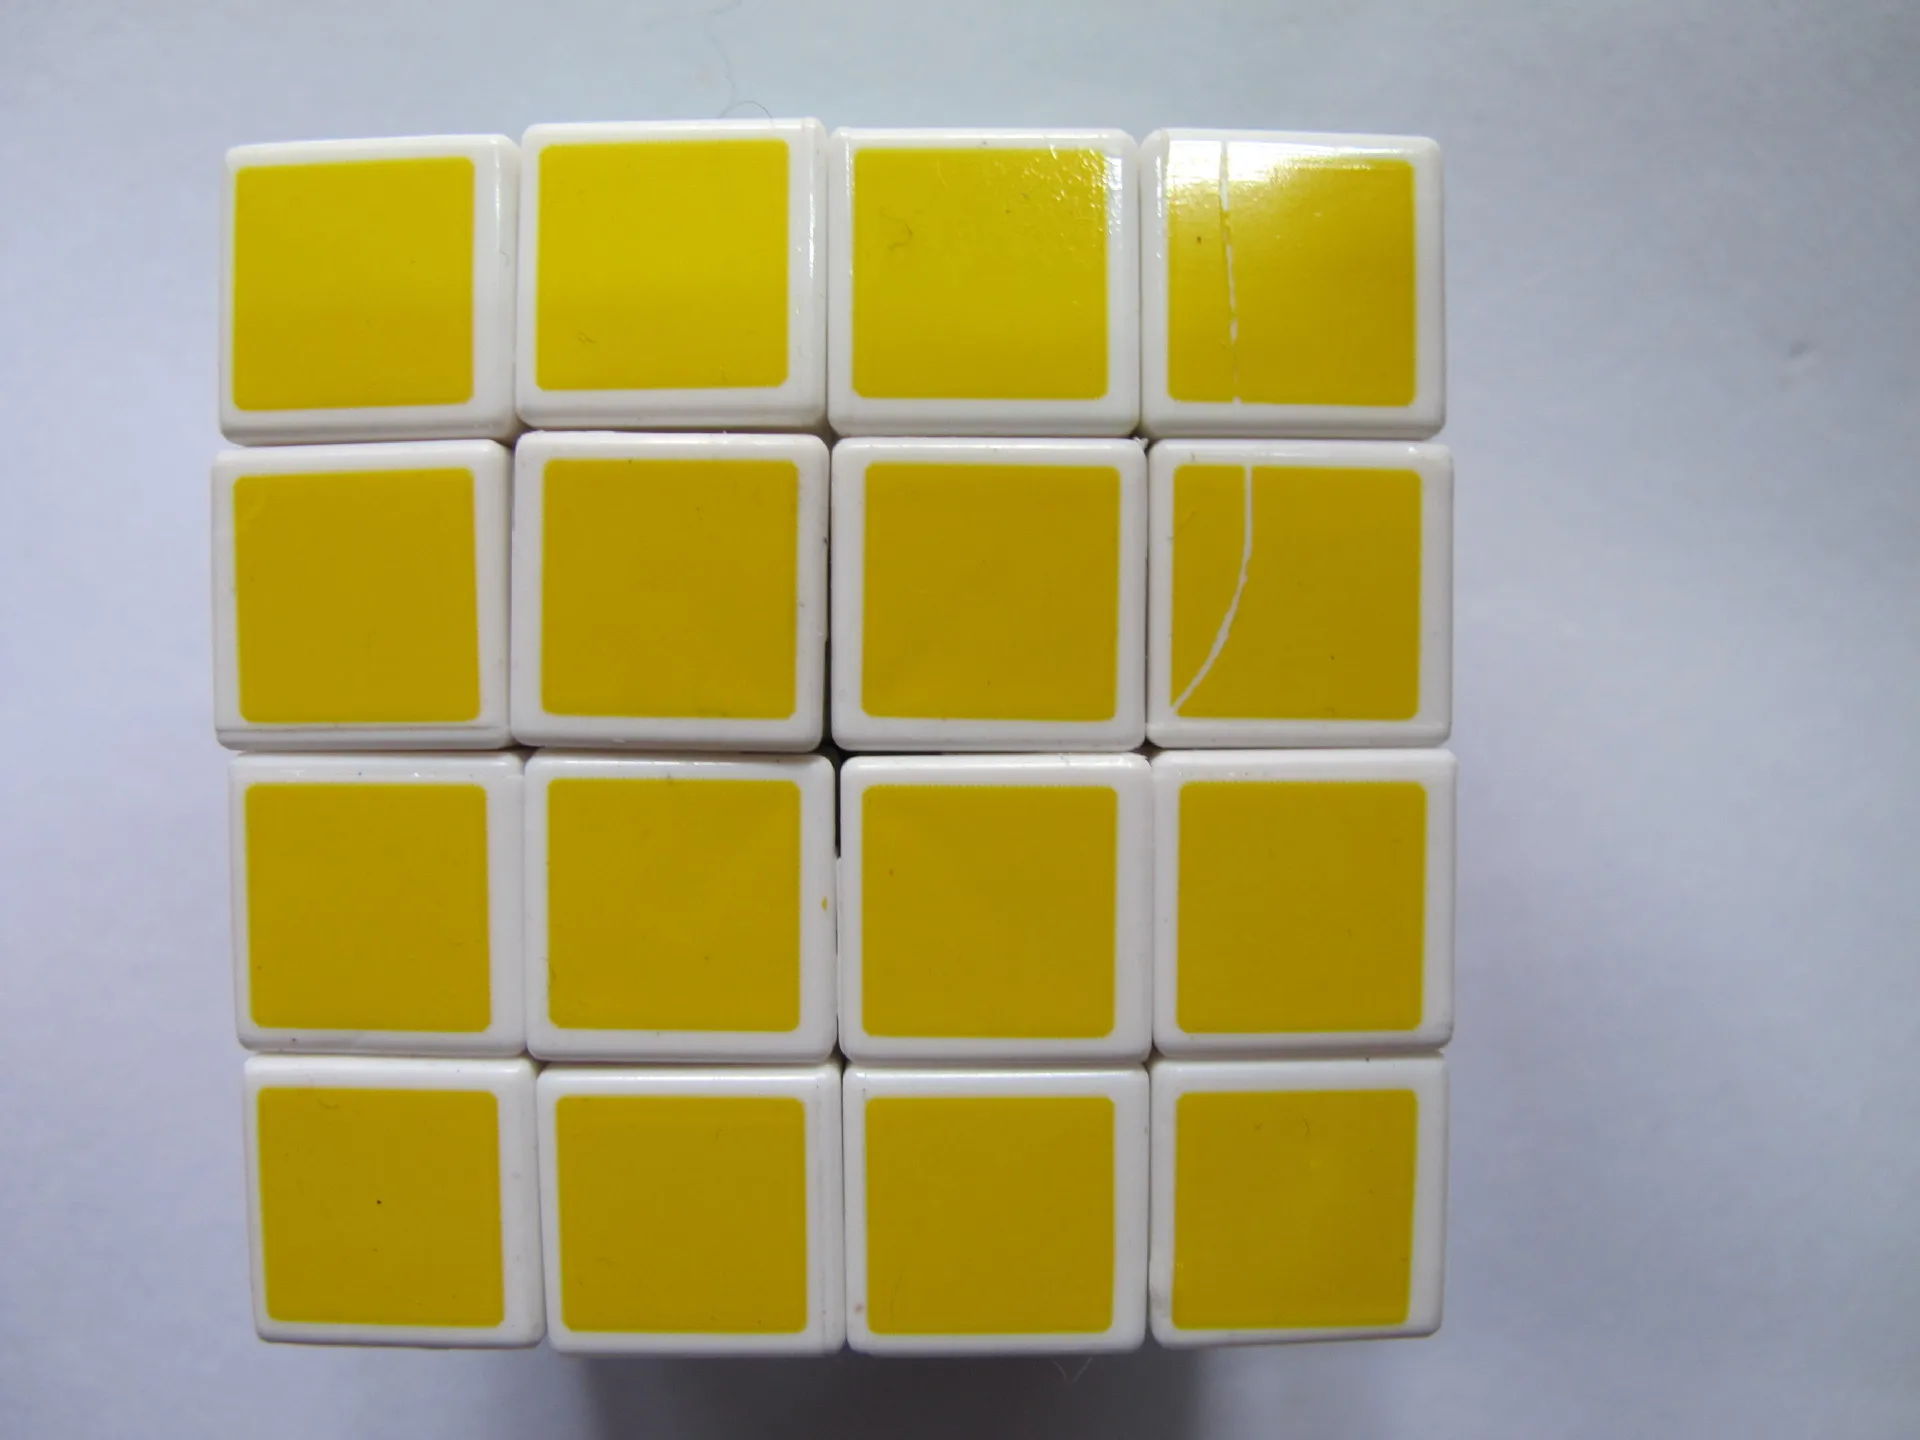 Четыре заказа магический куб Уровень соревнований Кубик Рубика волшебный красочный детский кубик игрушка